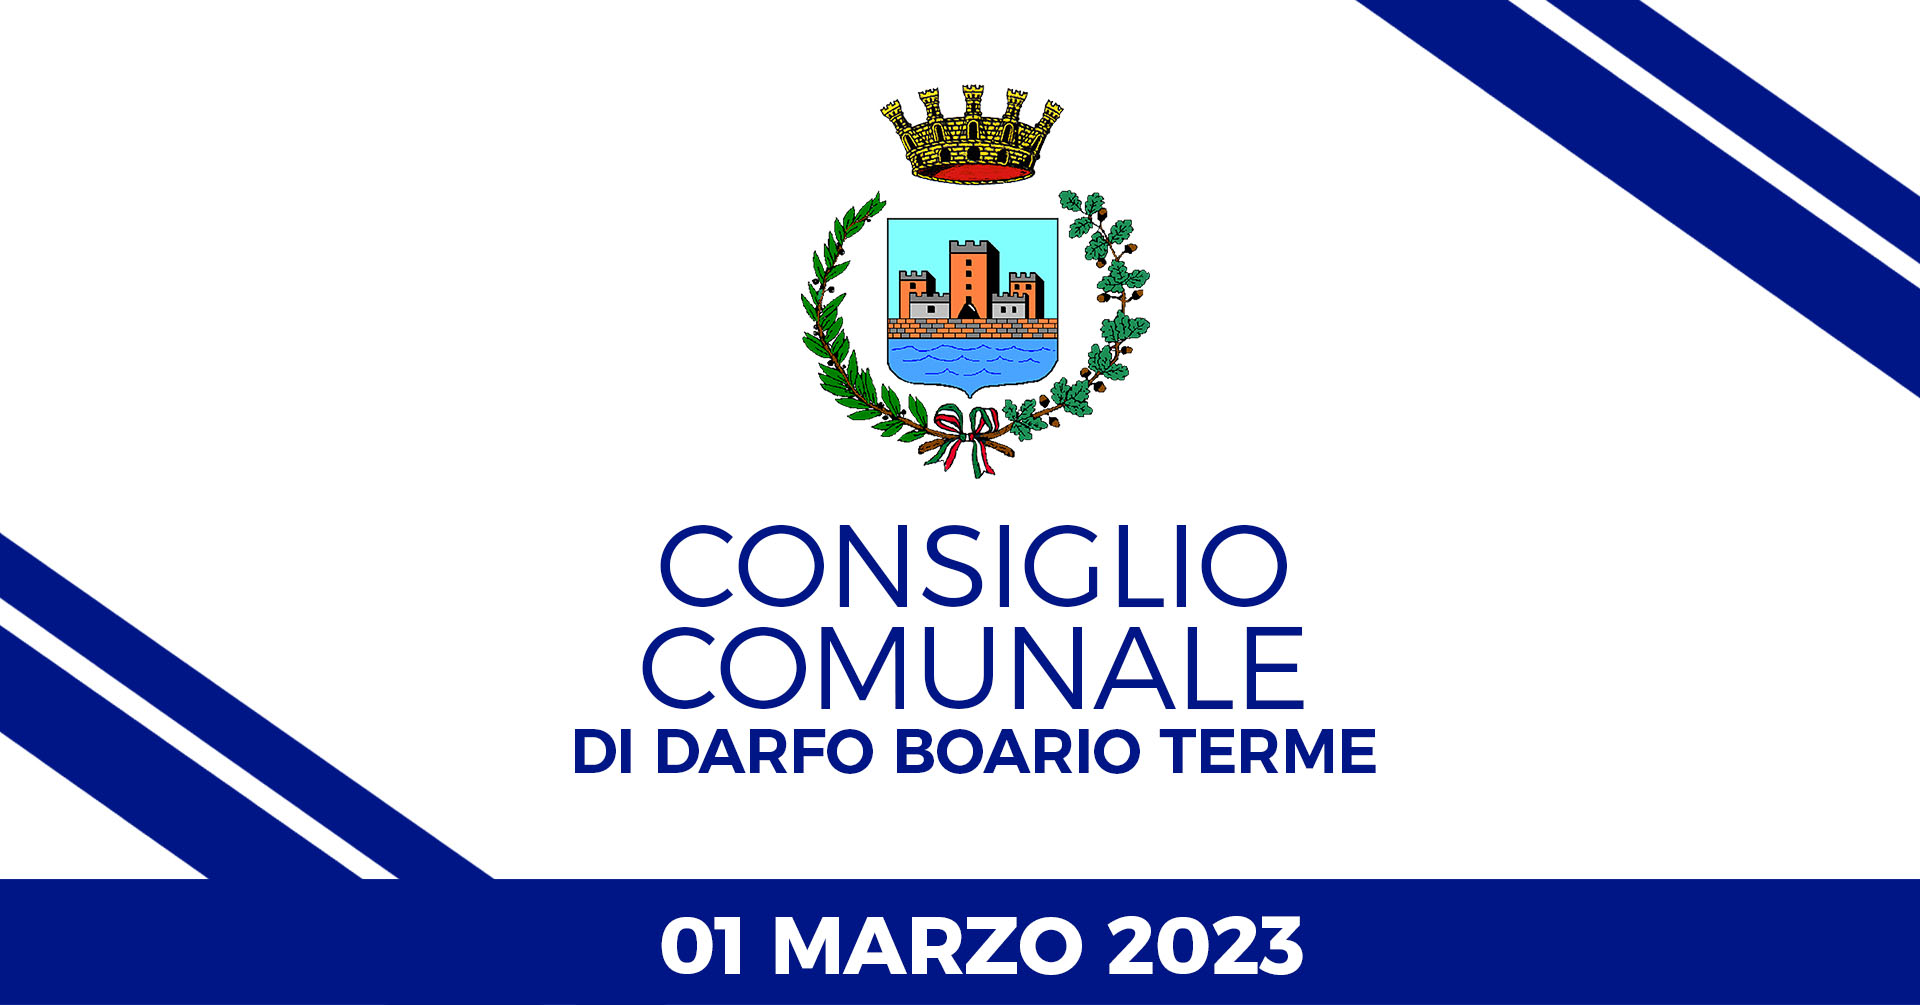 Consiglio Comunale di Darfo Boario Terme del 01 Marzo 2023